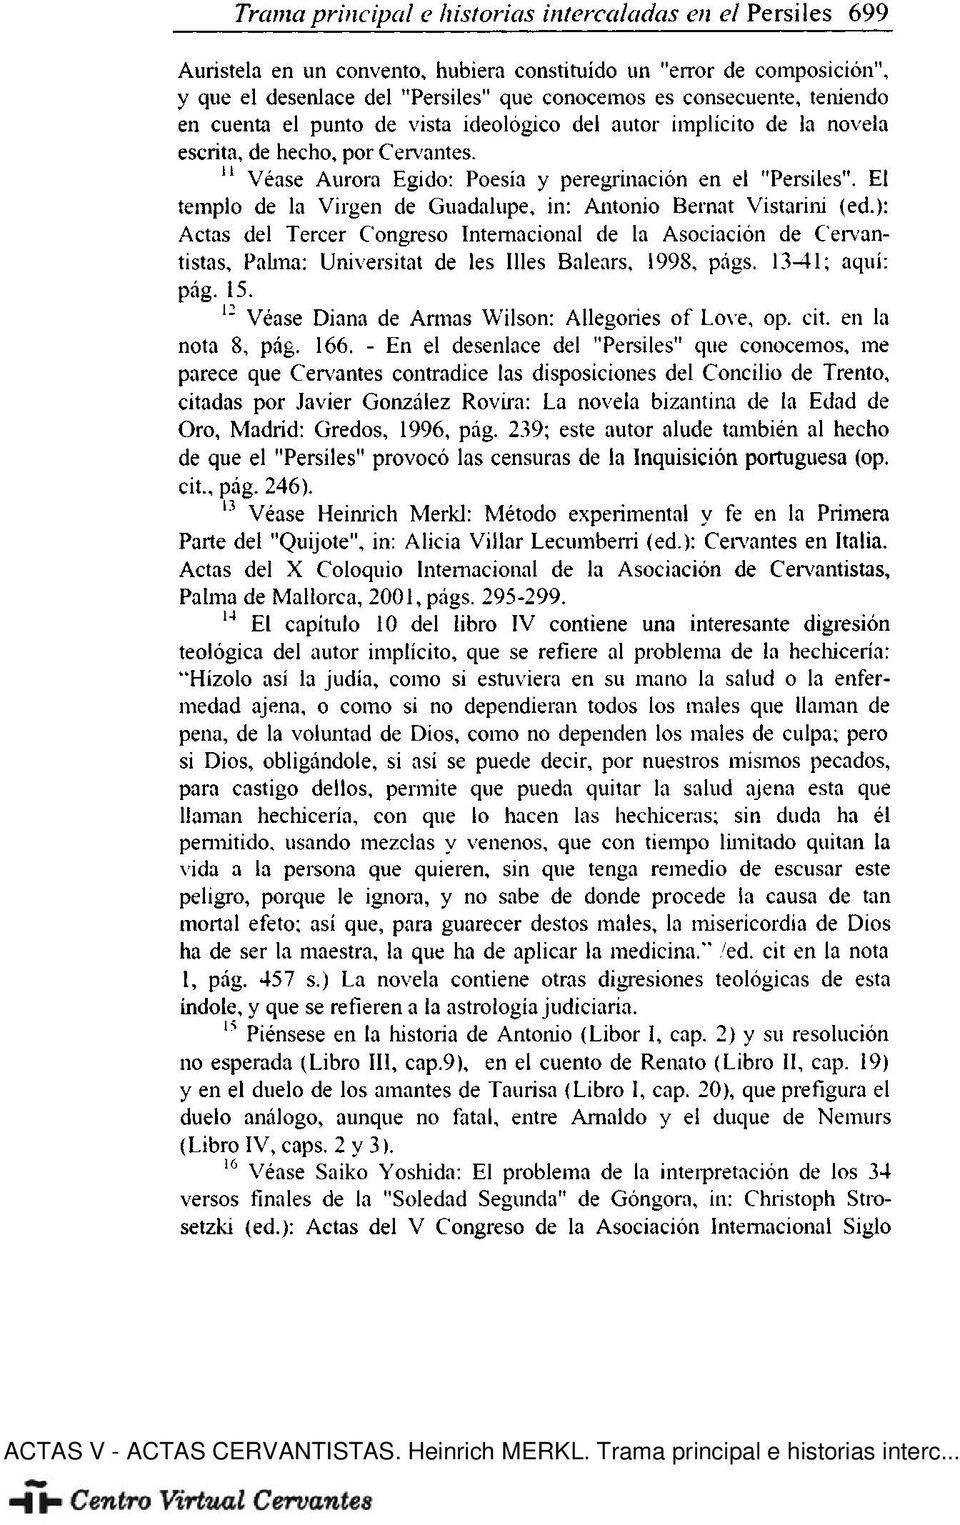 ): Actas del Tercer Congreso Internacional de la Asociación de Cervantistas, Pahna: Universität de les Ules Balears, 1998, págs. 1341; aquí: pág. 15.